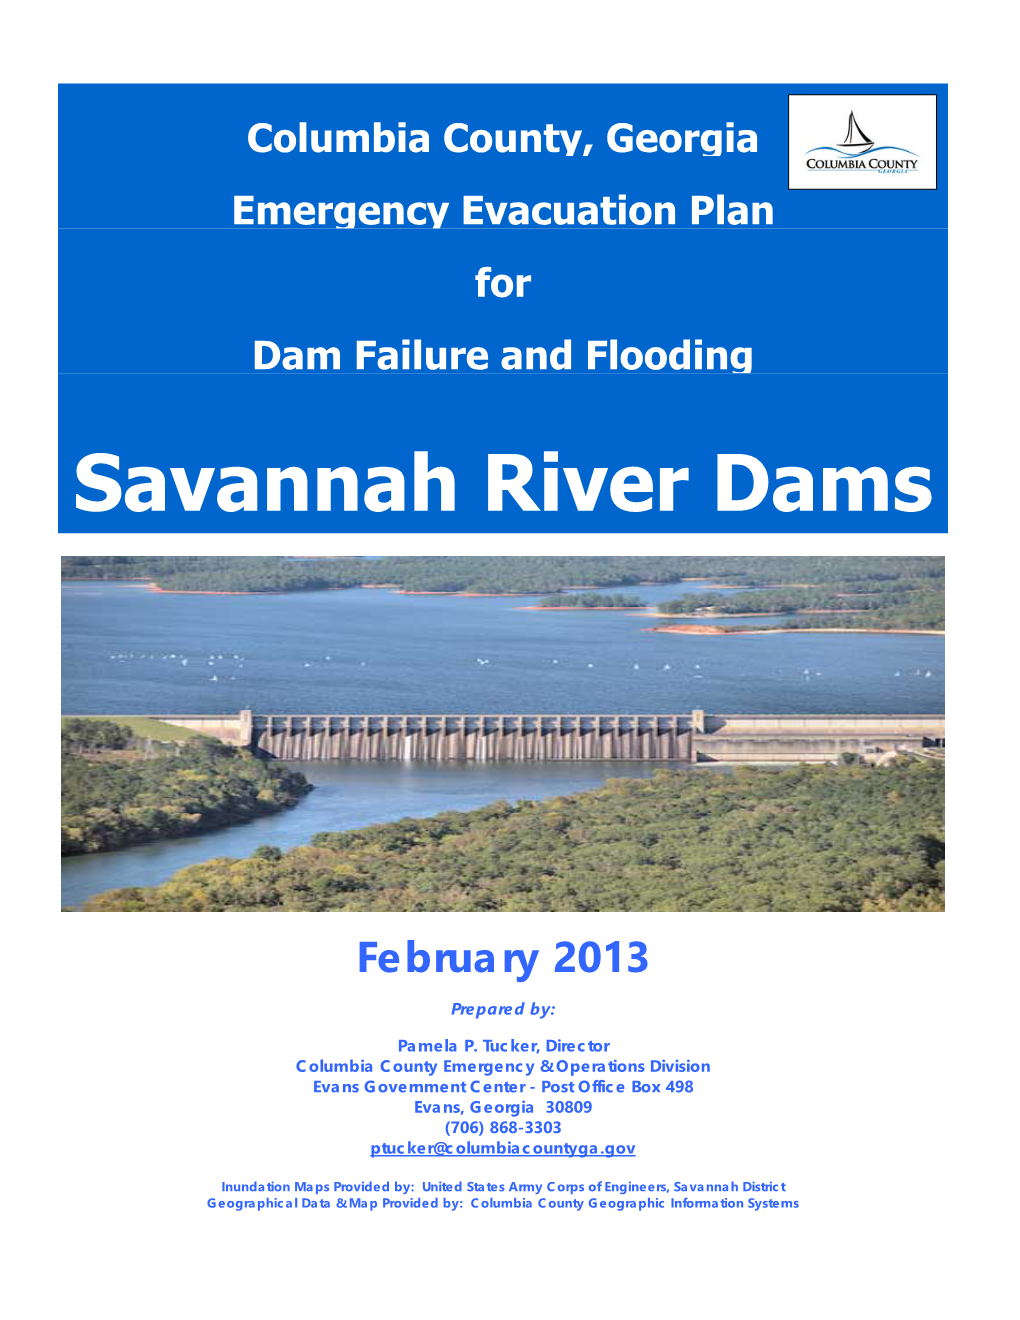 Savannah River Dams